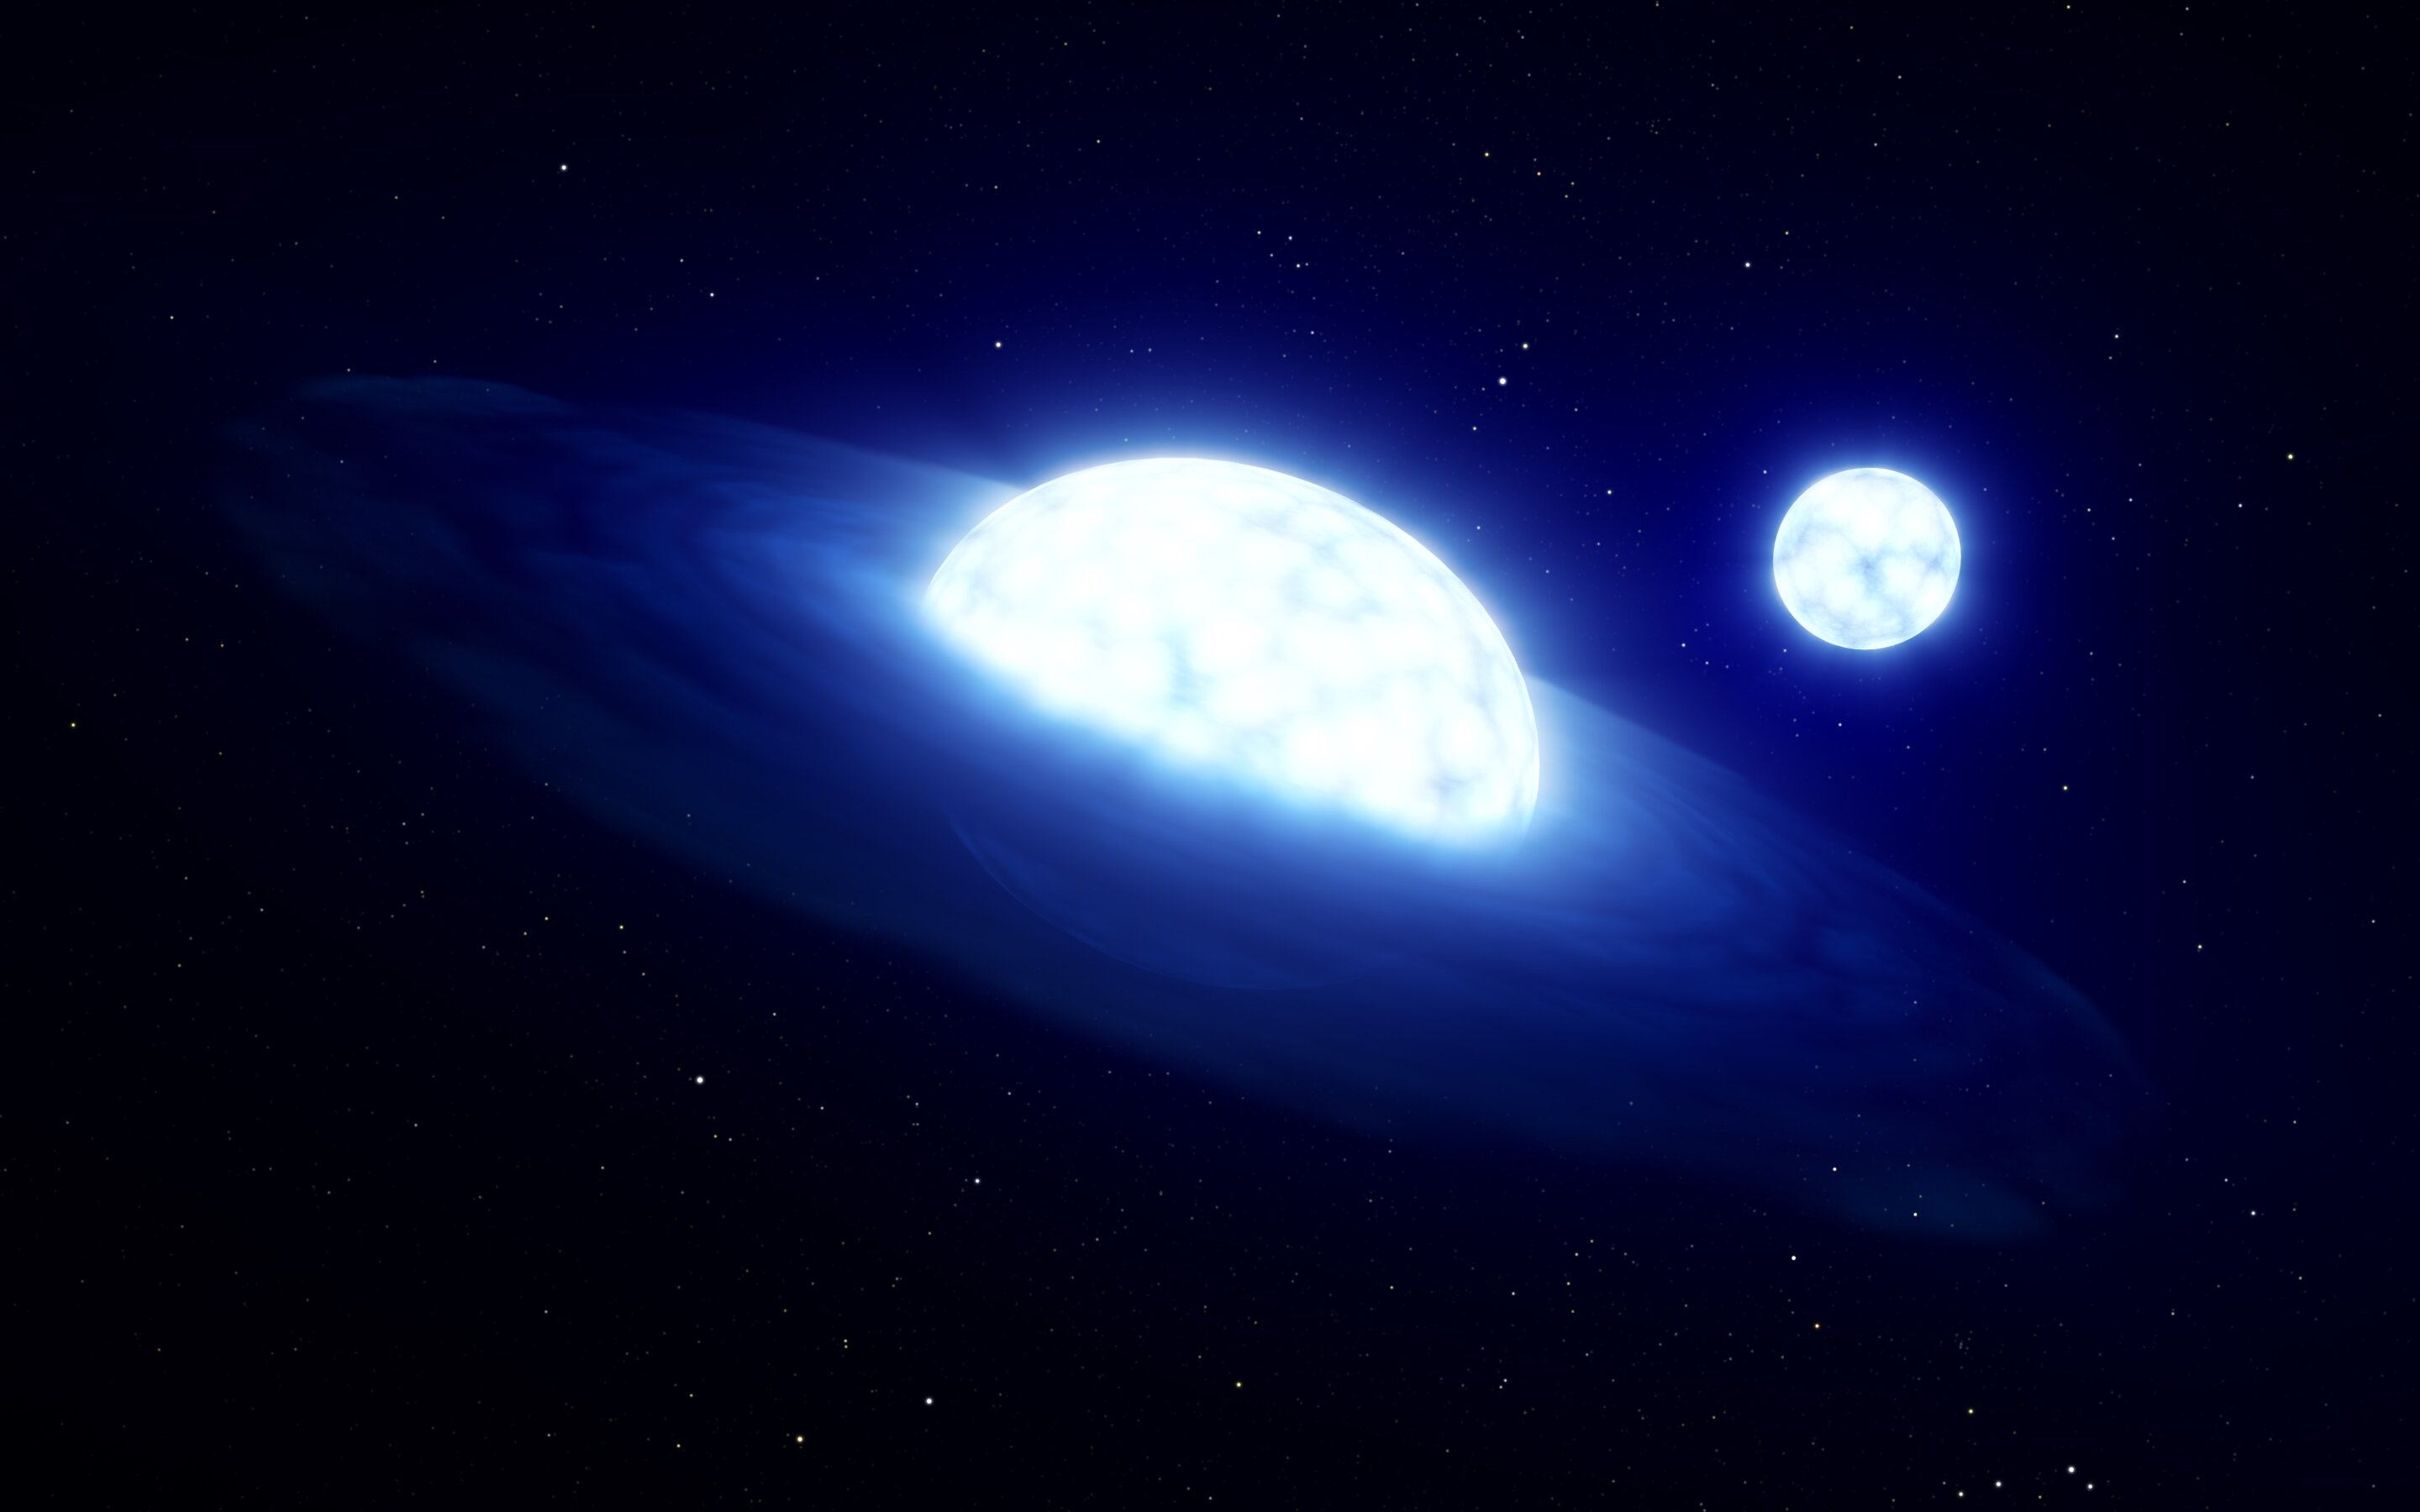 El descubrimiento de la “estrella triple” podría revolucionar la comprensión de la evolución estelar